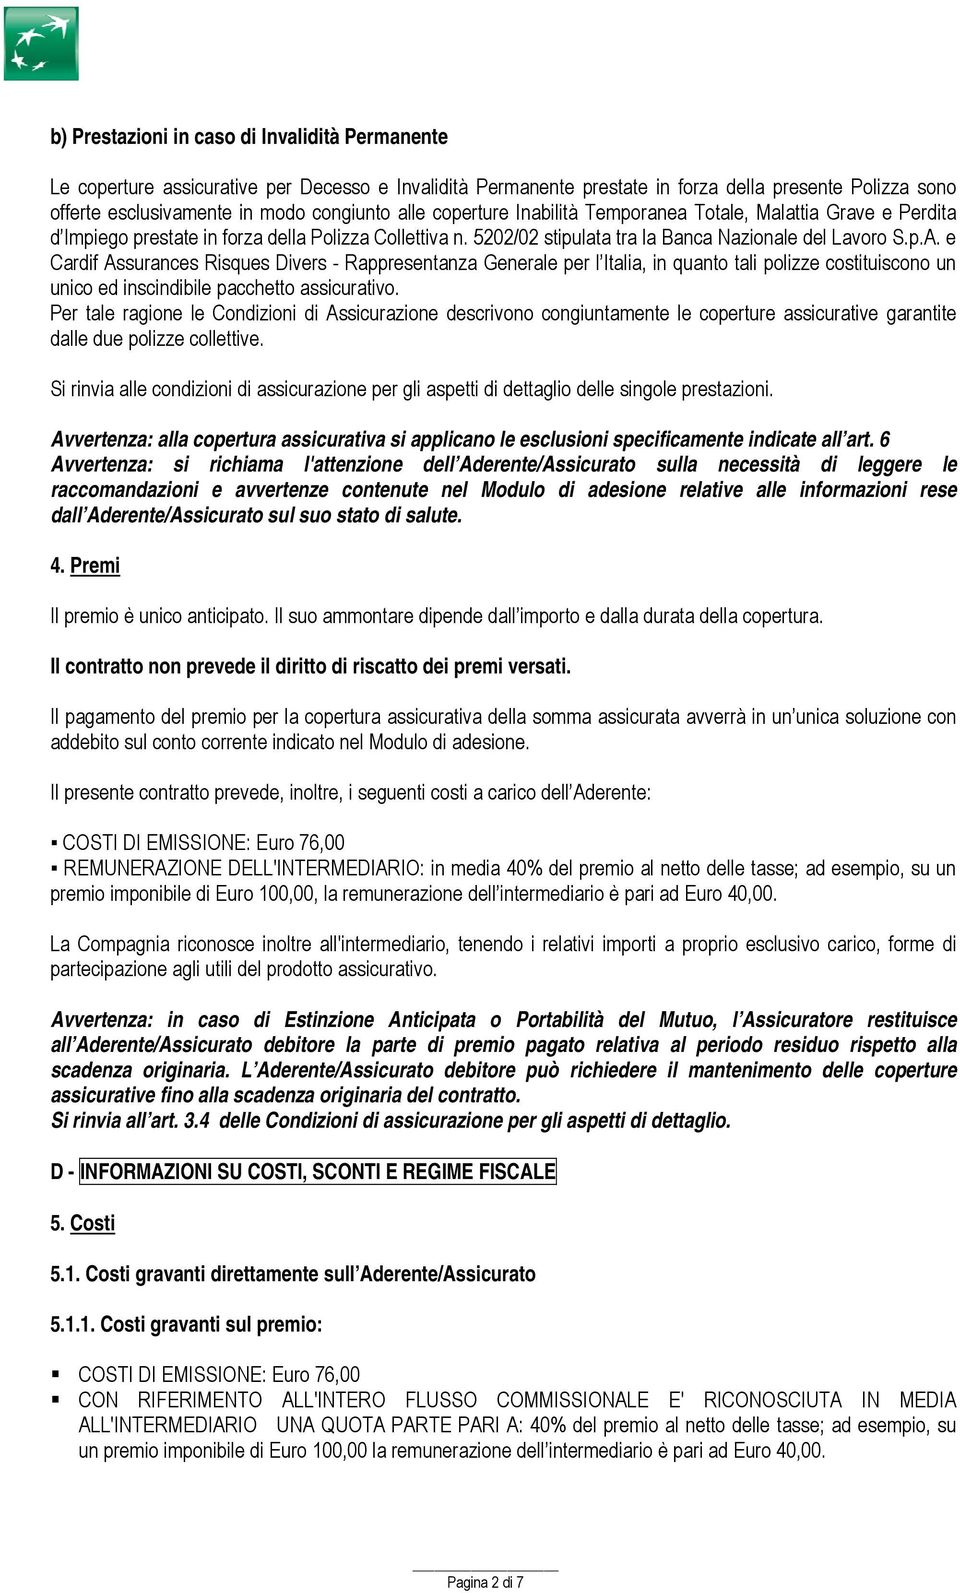 e Cardif Assurances Risques Divers - Rappresentanza Generale per l Italia, in quanto tali polizze costituiscono un unico ed inscindibile pacchetto assicurativo.